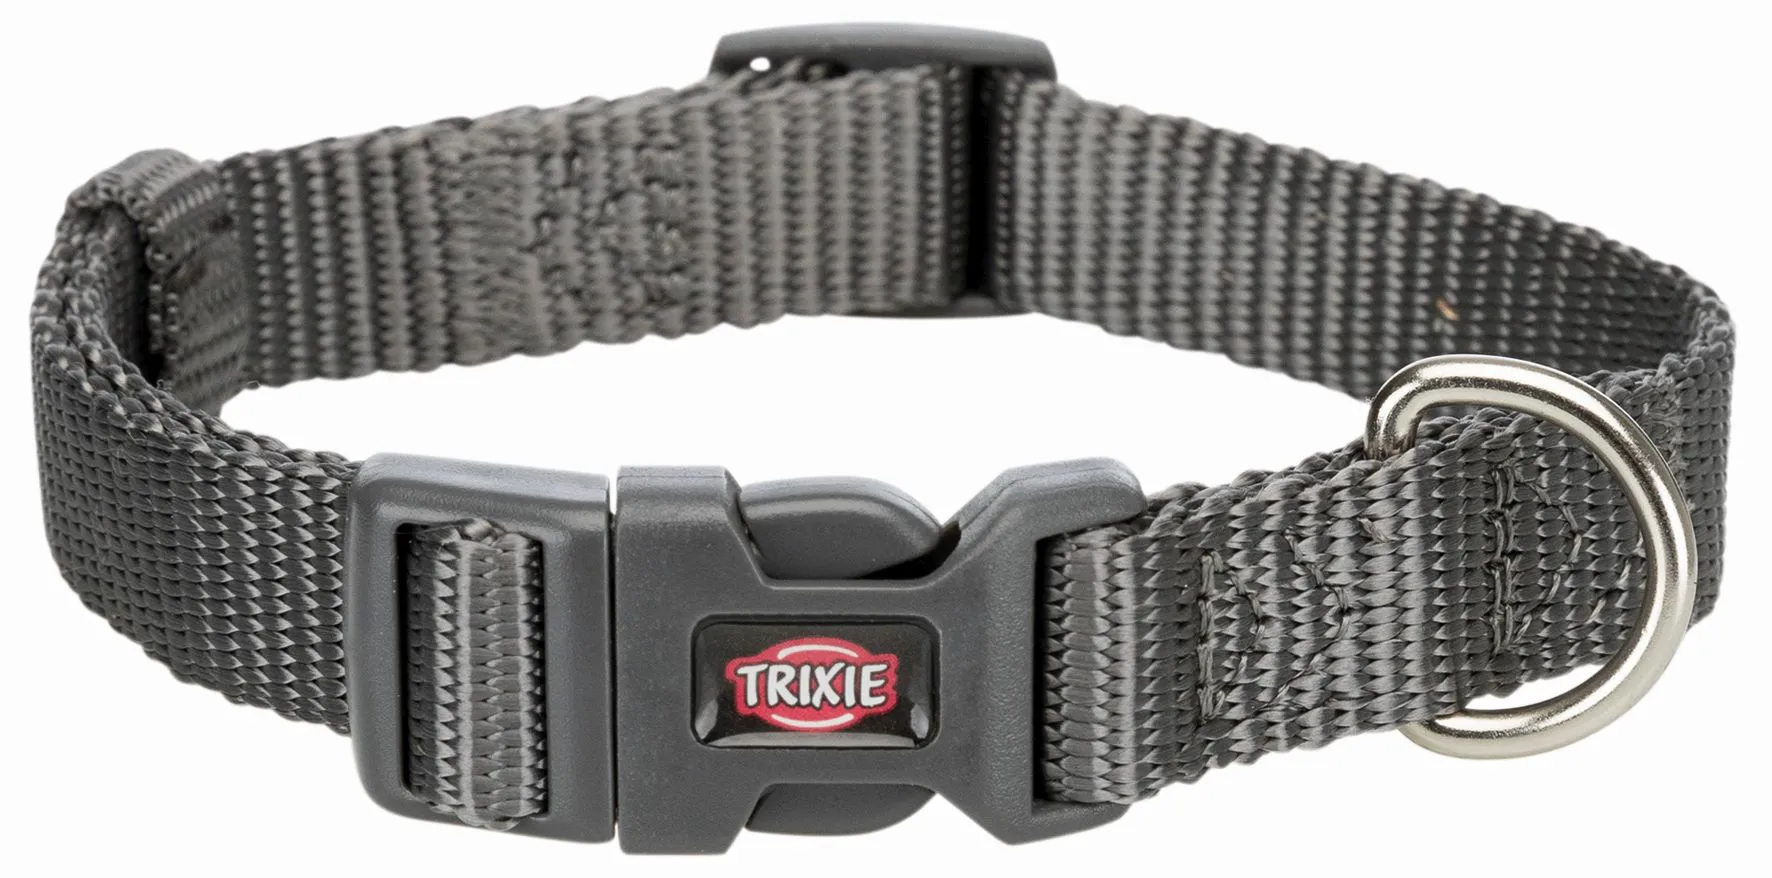  Ошейник Trixie Premium, XS-S, 22-35см, 10мм, графит